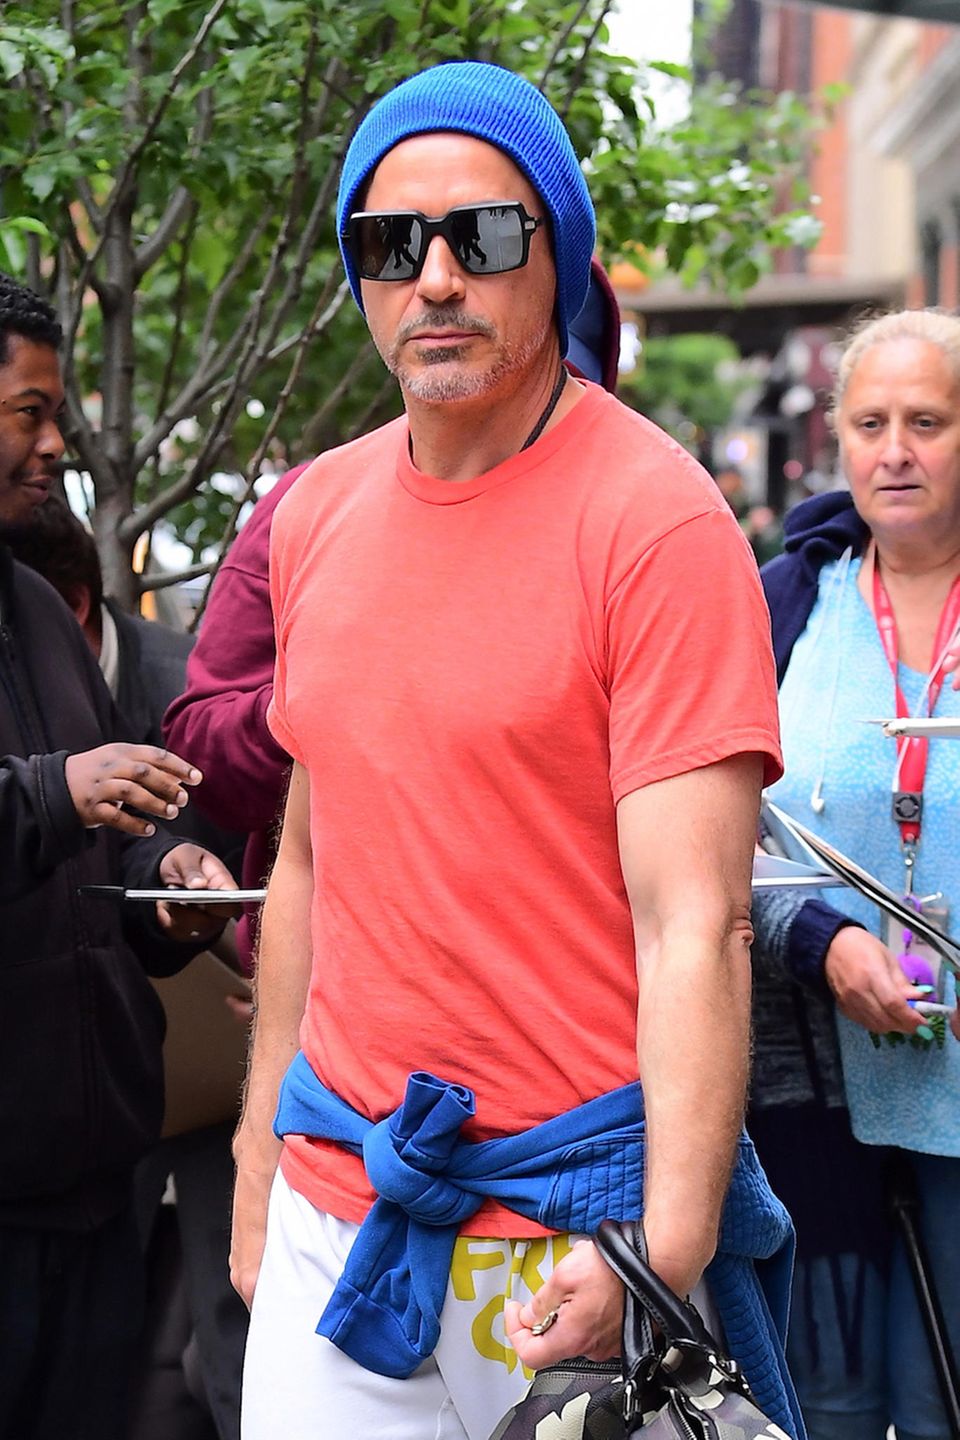 Robert Downey Jr. trägt seine blaue Strickmütze farblich passend zum um die Hüfte geschwungenen Sweatshirt.